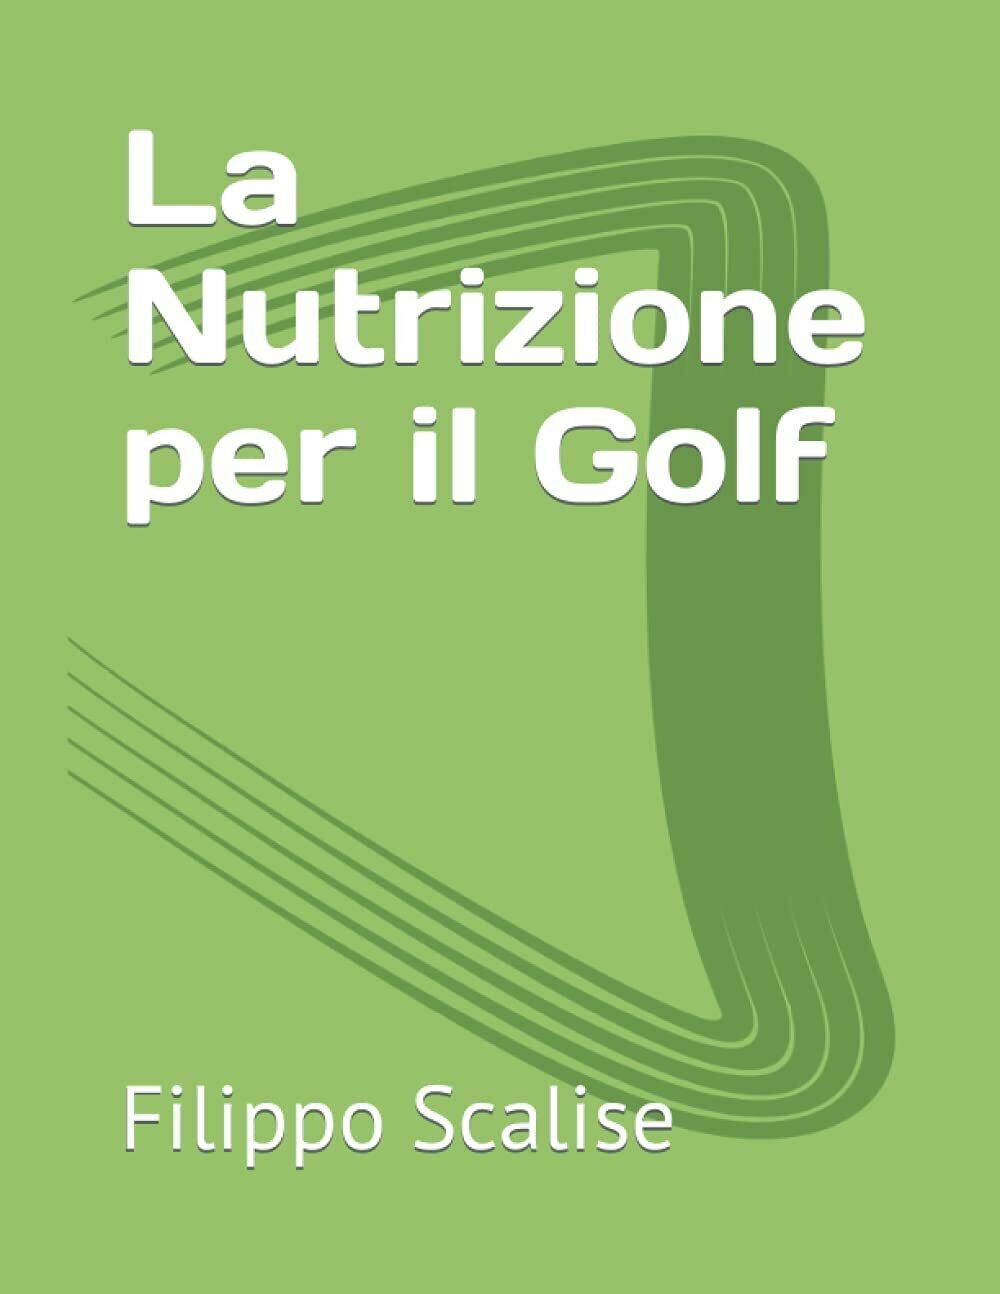 La Nutrizione per il Golf - Filippo Scalise - Independently, 2021